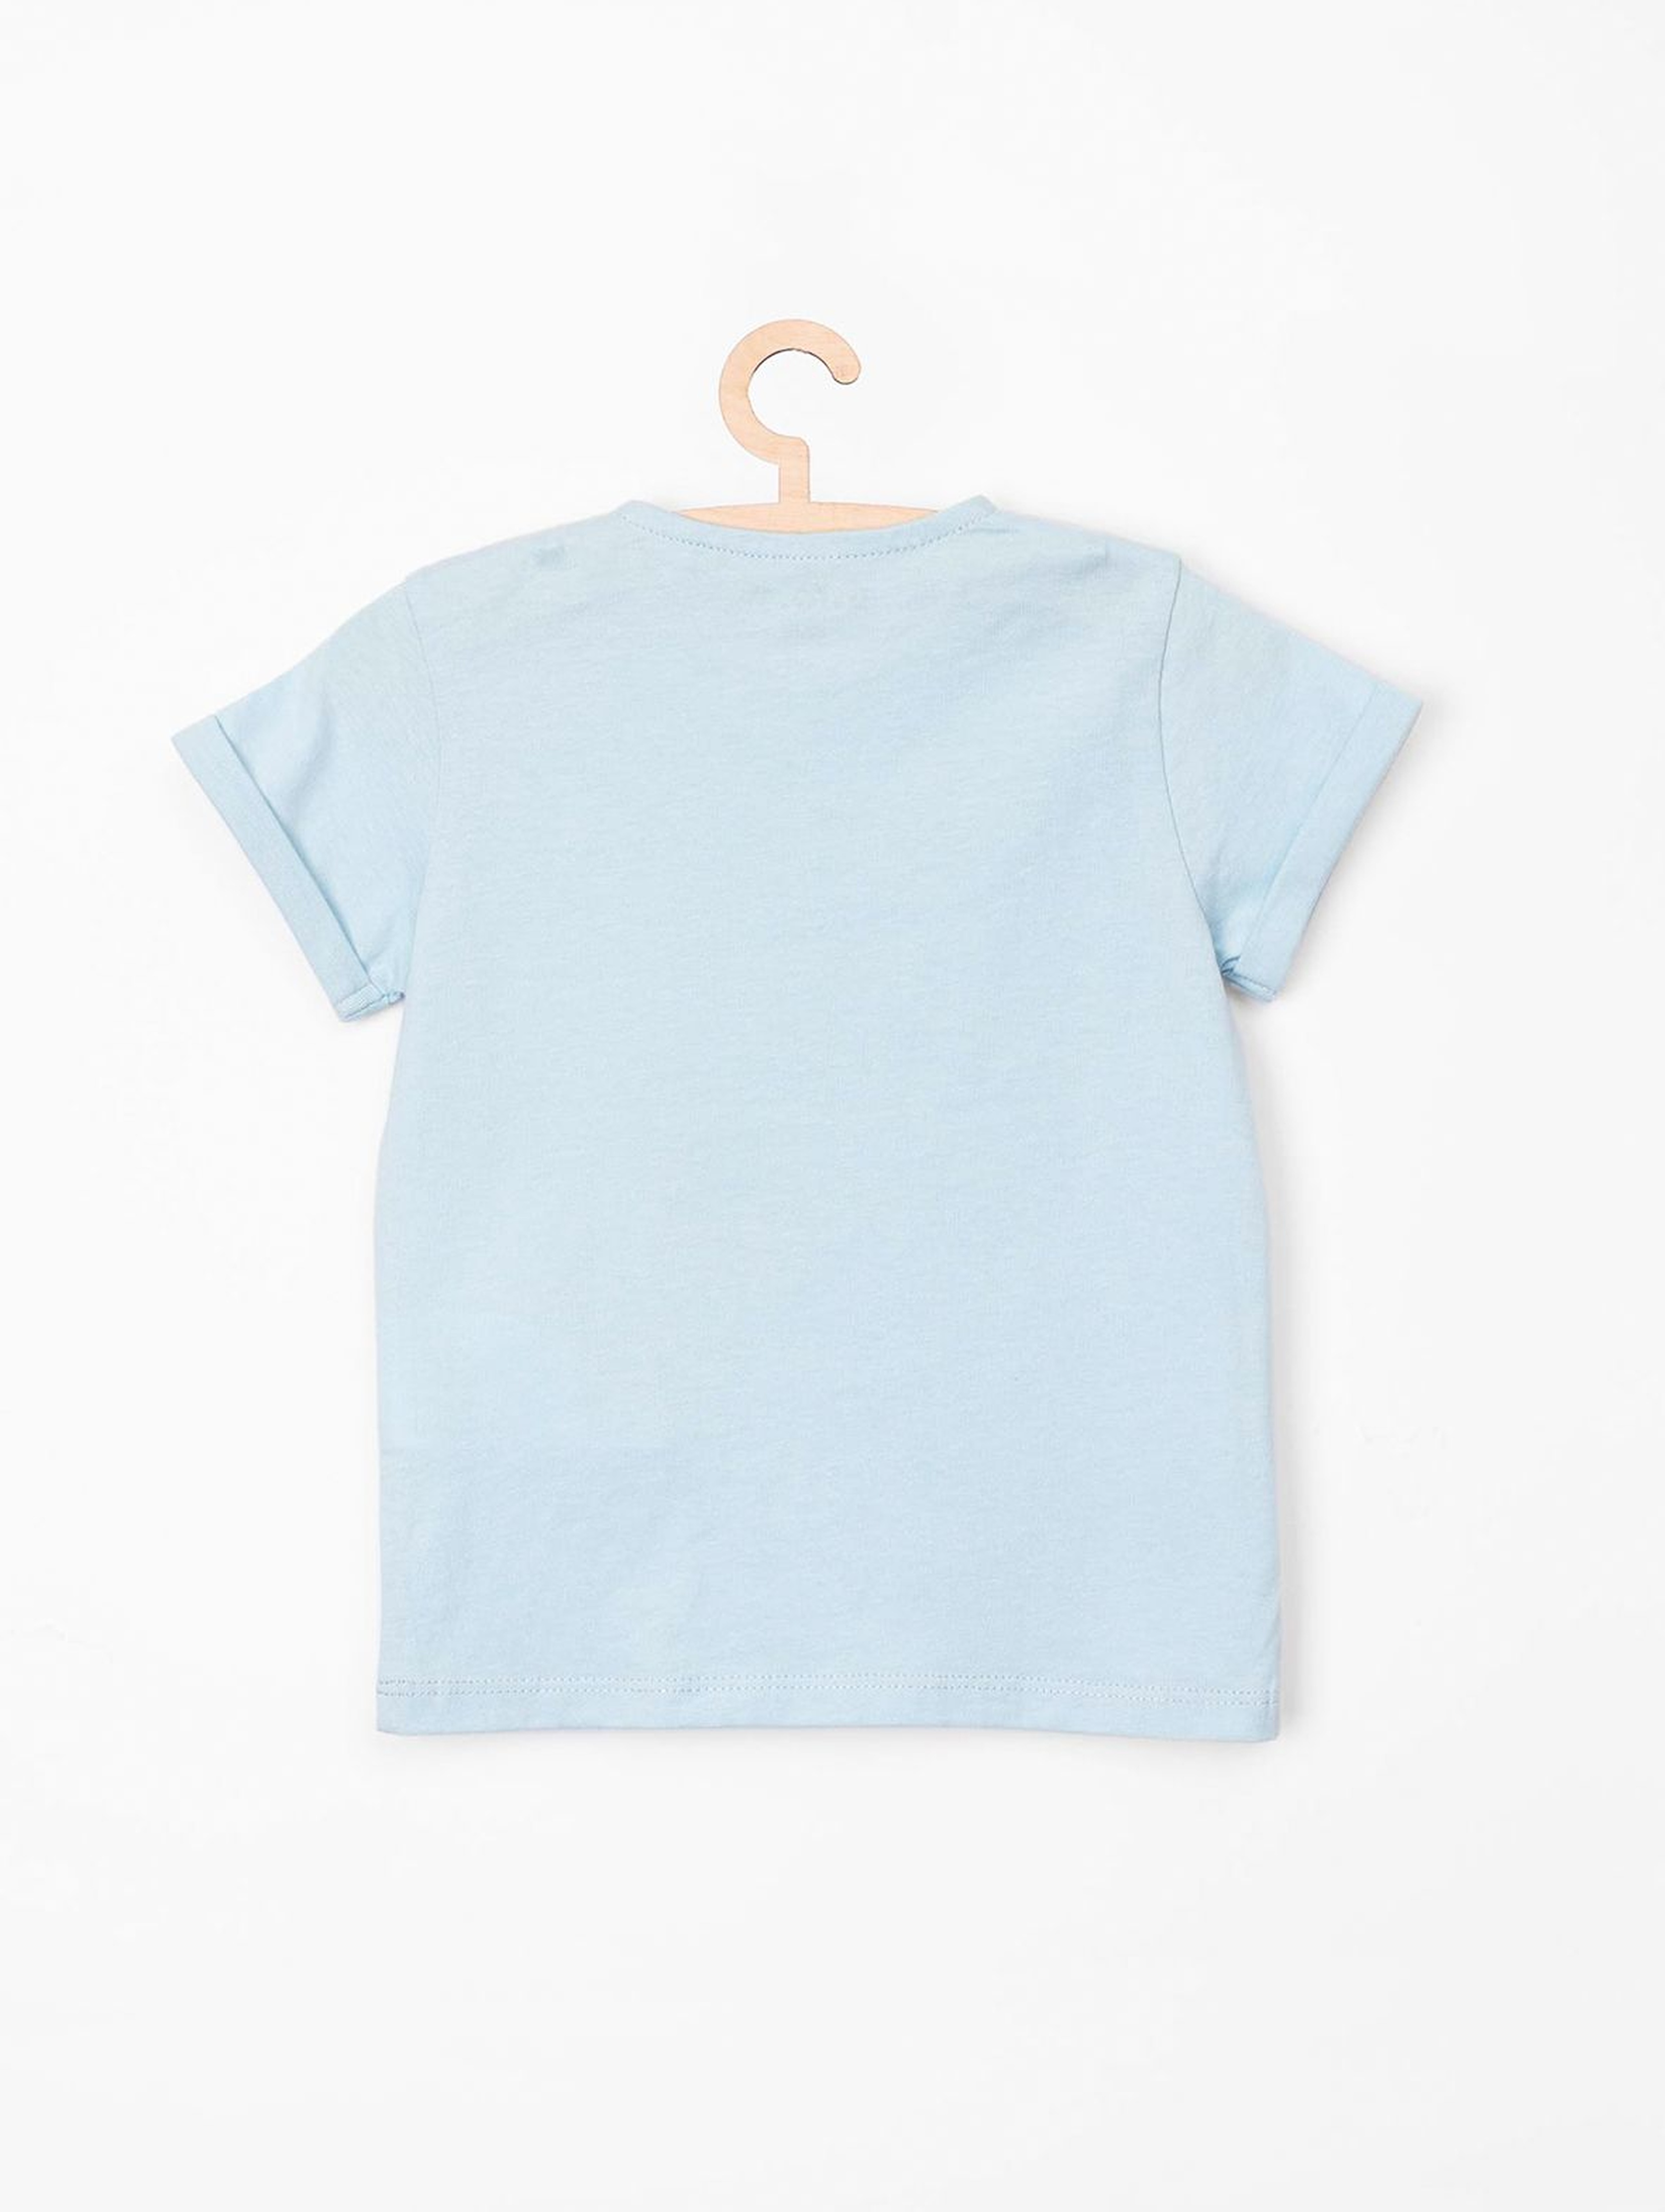 T-Shirt dziewczęcy niebieski z napisem